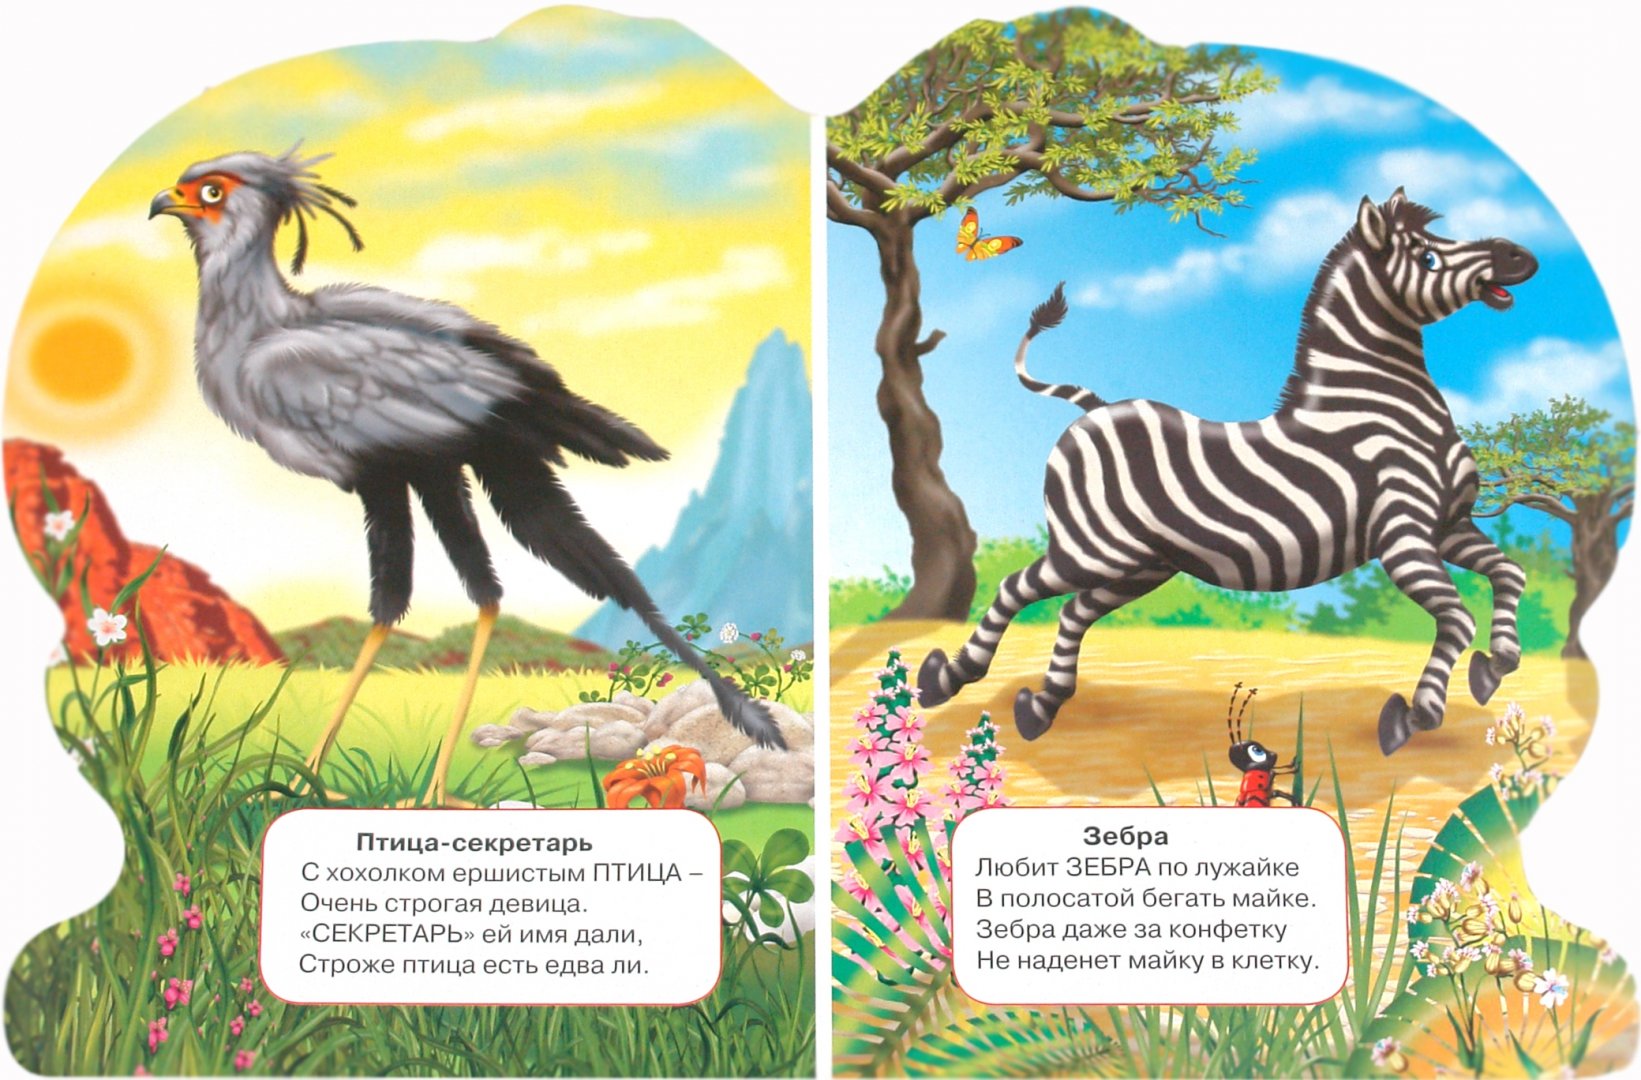 Иллюстрация 1 из 7 для Глобус. Малышам - животные Африки - Владимир Степанов | Лабиринт - книги. Источник: Лабиринт